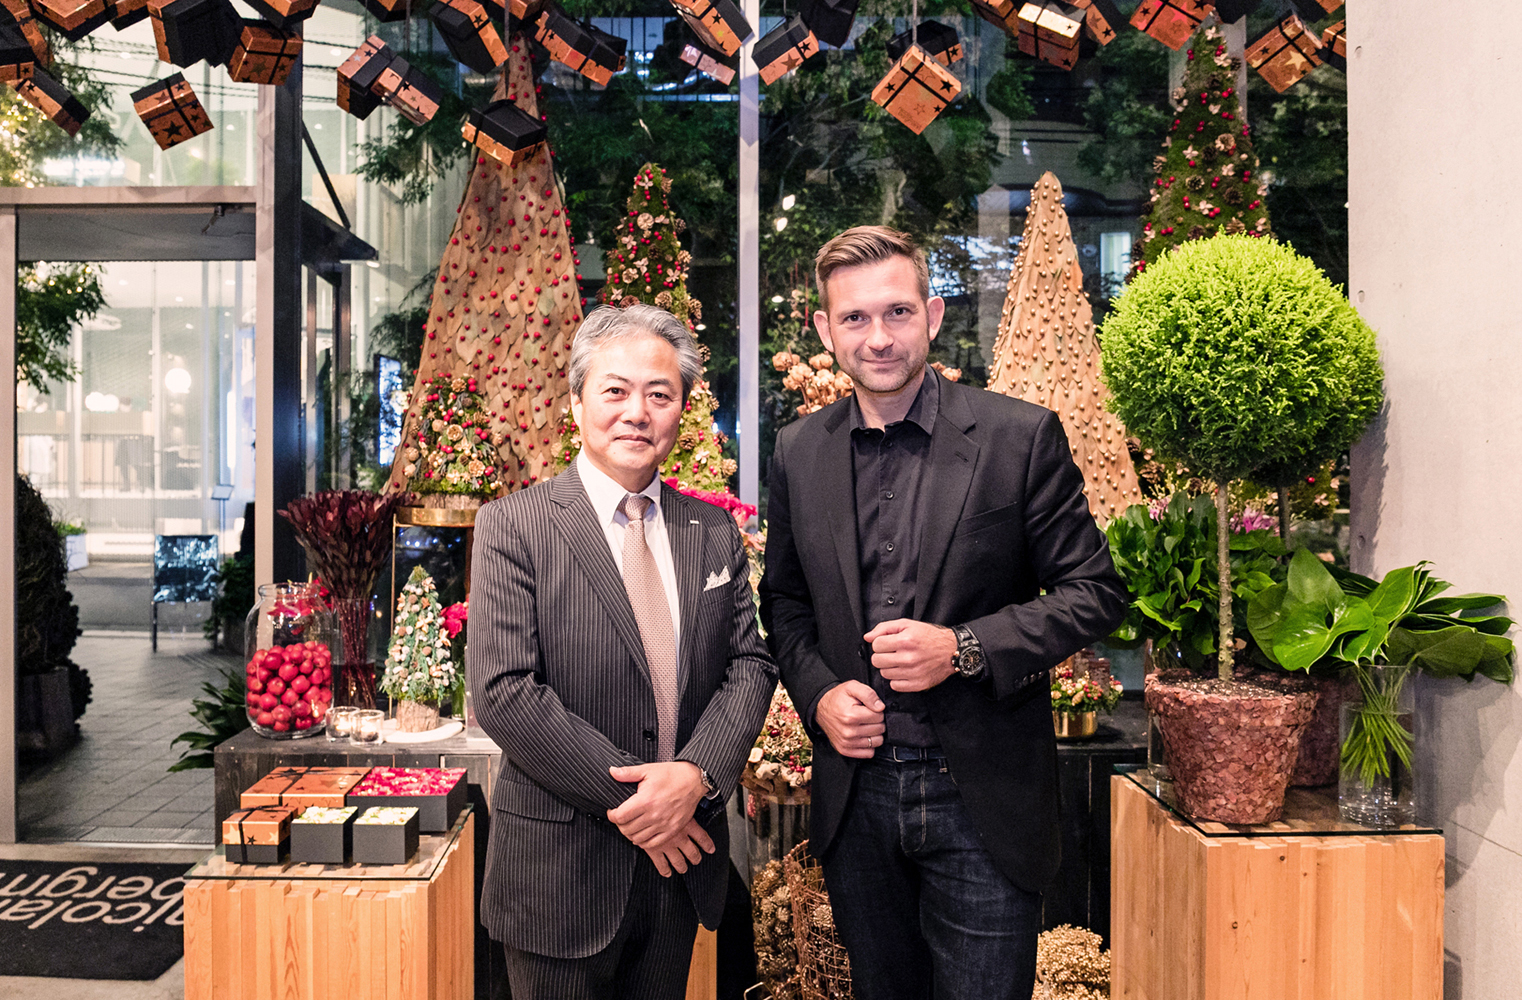 祝祭を彩る花と光のアート 東京ミチテラス17 を 総合演出のフラワーアーティスト ニコライ バーグマン氏と語る 恵比寿発 違いを生み出す広告会社のひと こと ものサイト